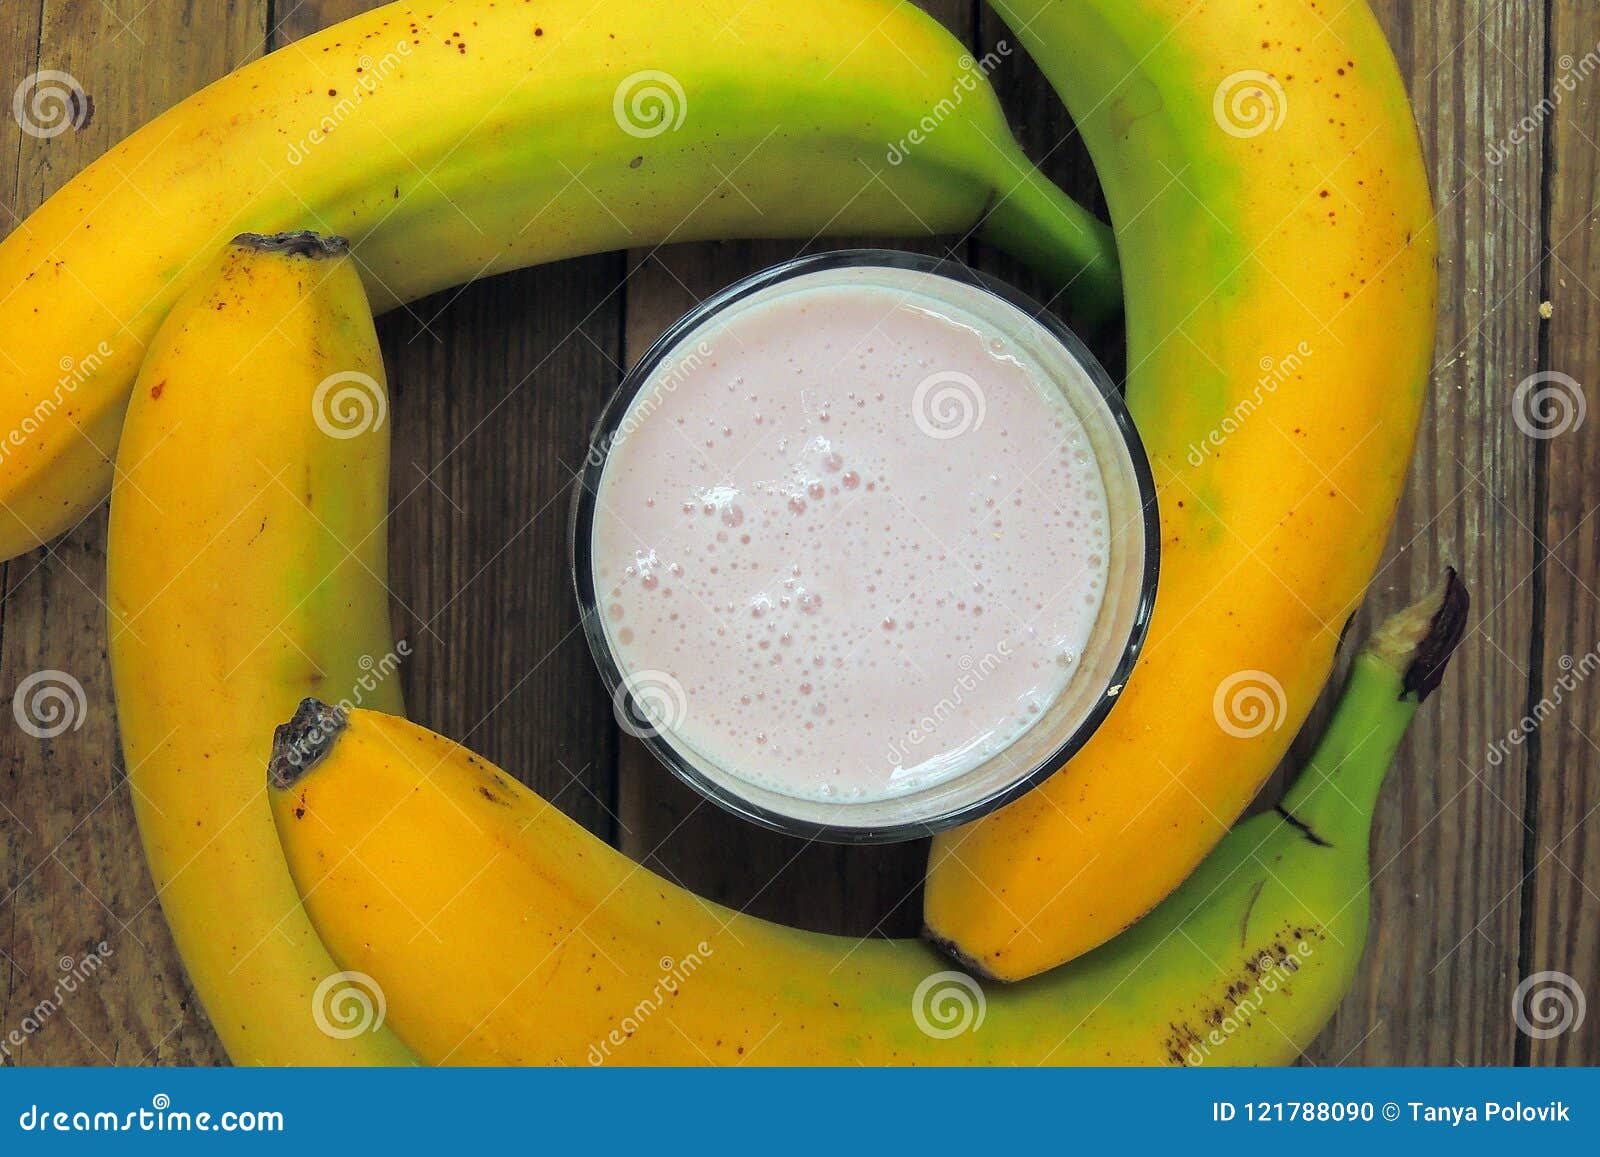 椰香巧克力酸奶冻香蕉怎么做_椰香巧克力酸奶冻香蕉的做法_豆果美食